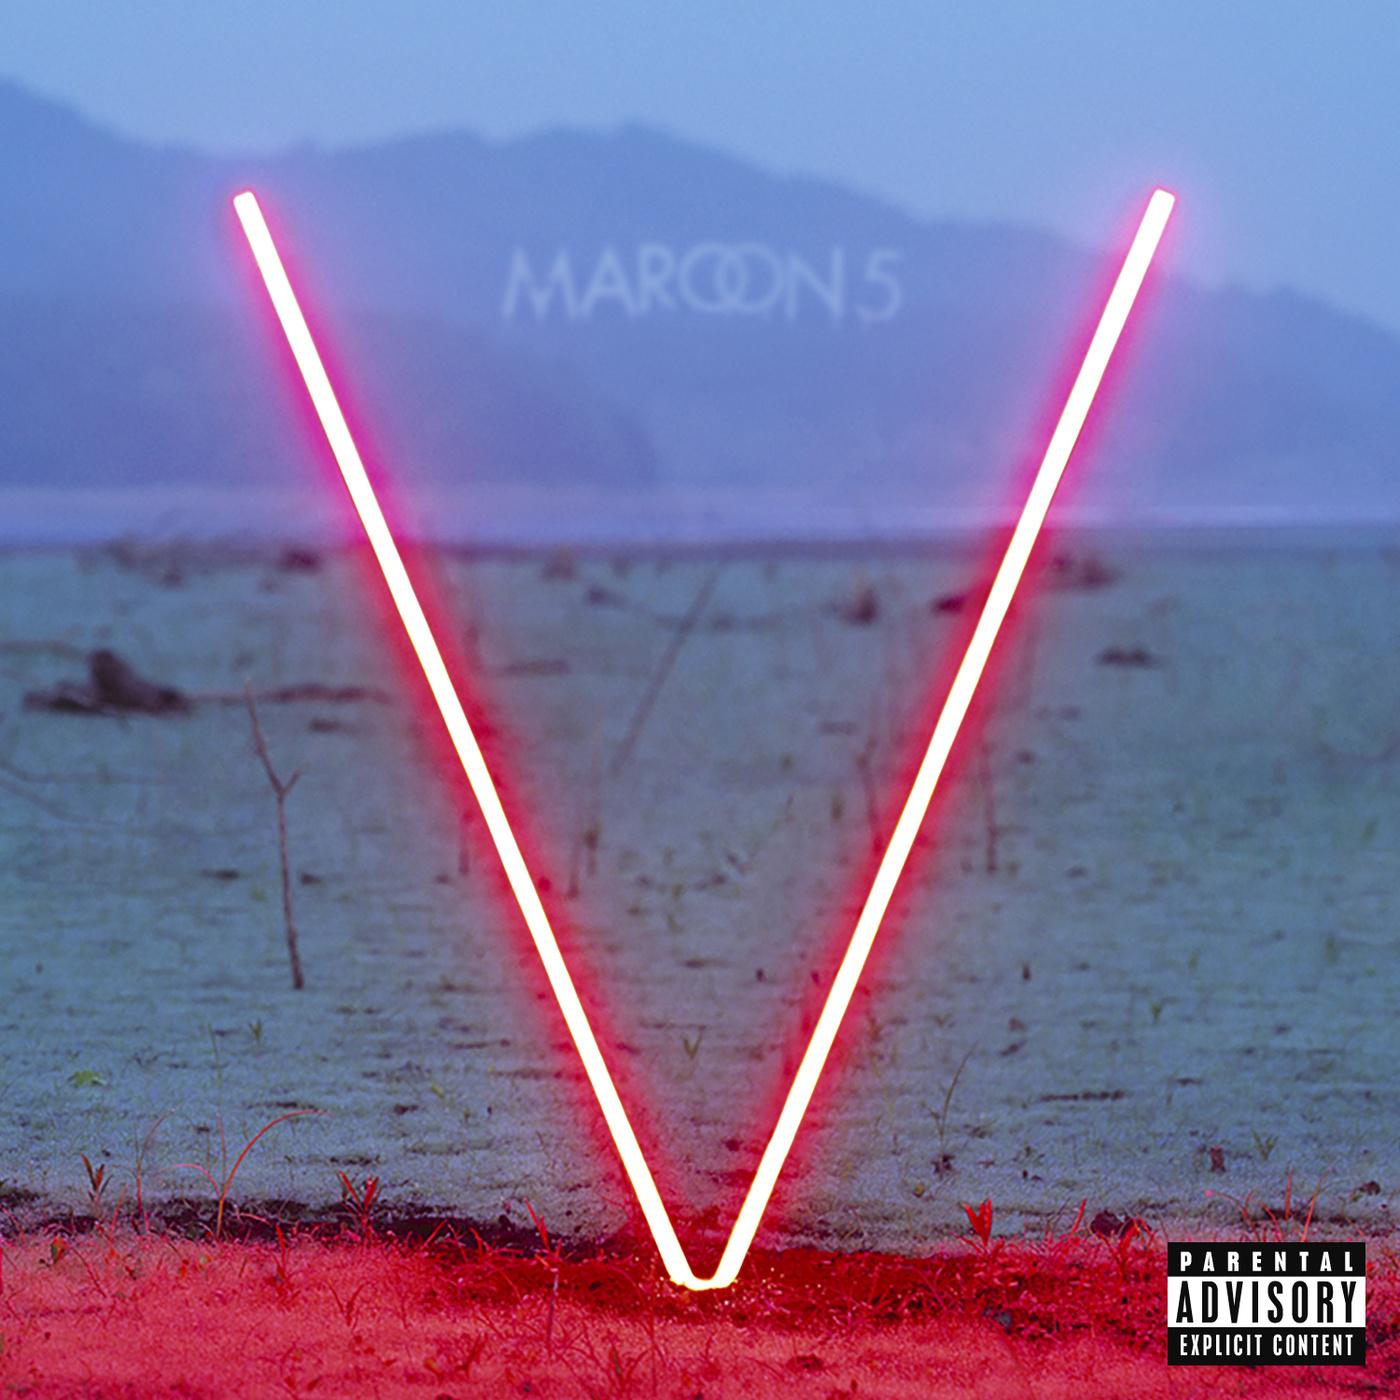 Sugar歌词 歌手Maroon 5-专辑V-单曲《Sugar》LRC歌词下载